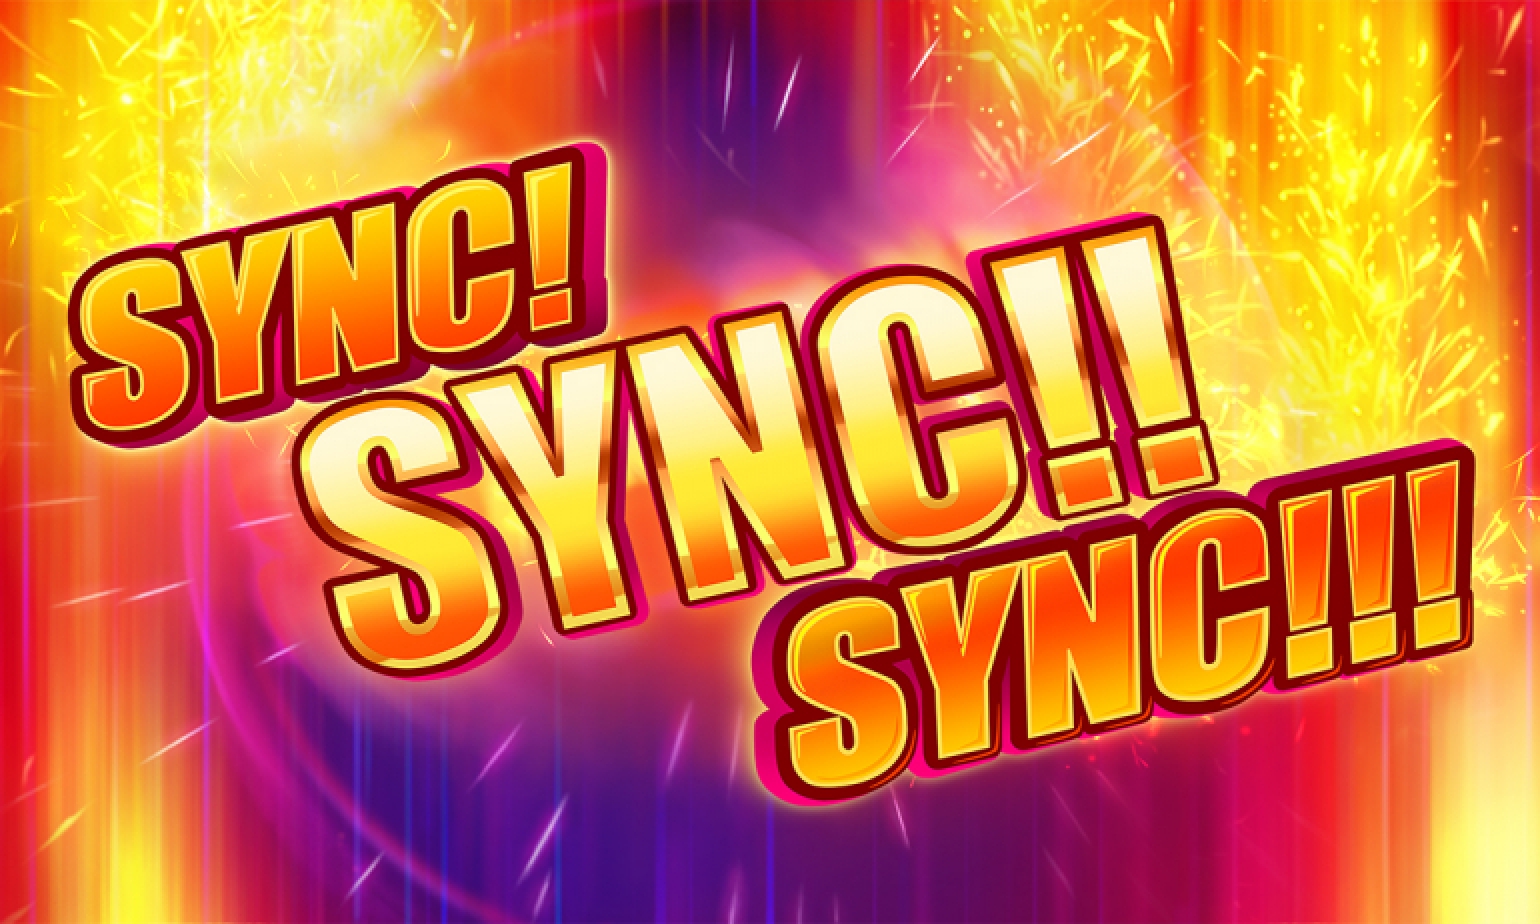 Sync! Sync!! Sync!!! demo